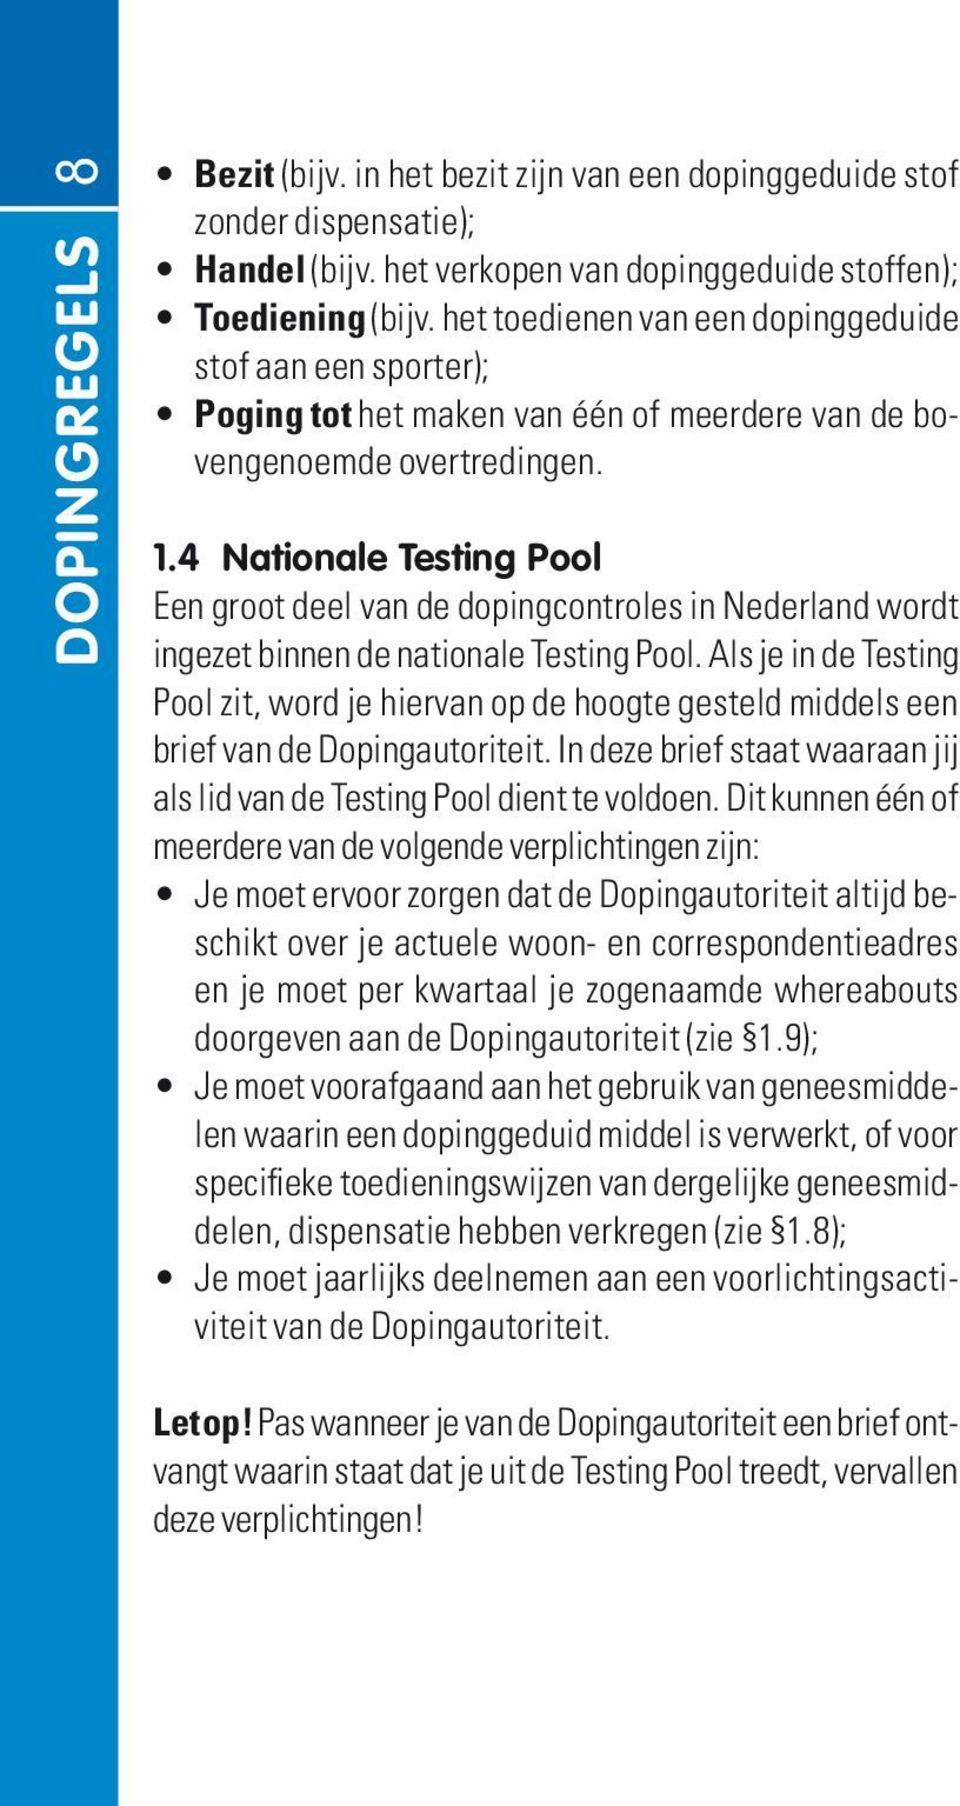 4 nationale Testing Pool Een groot deel van de dopingcontroles in Nederland wordt ingezet binnen de nationale Testing Pool.